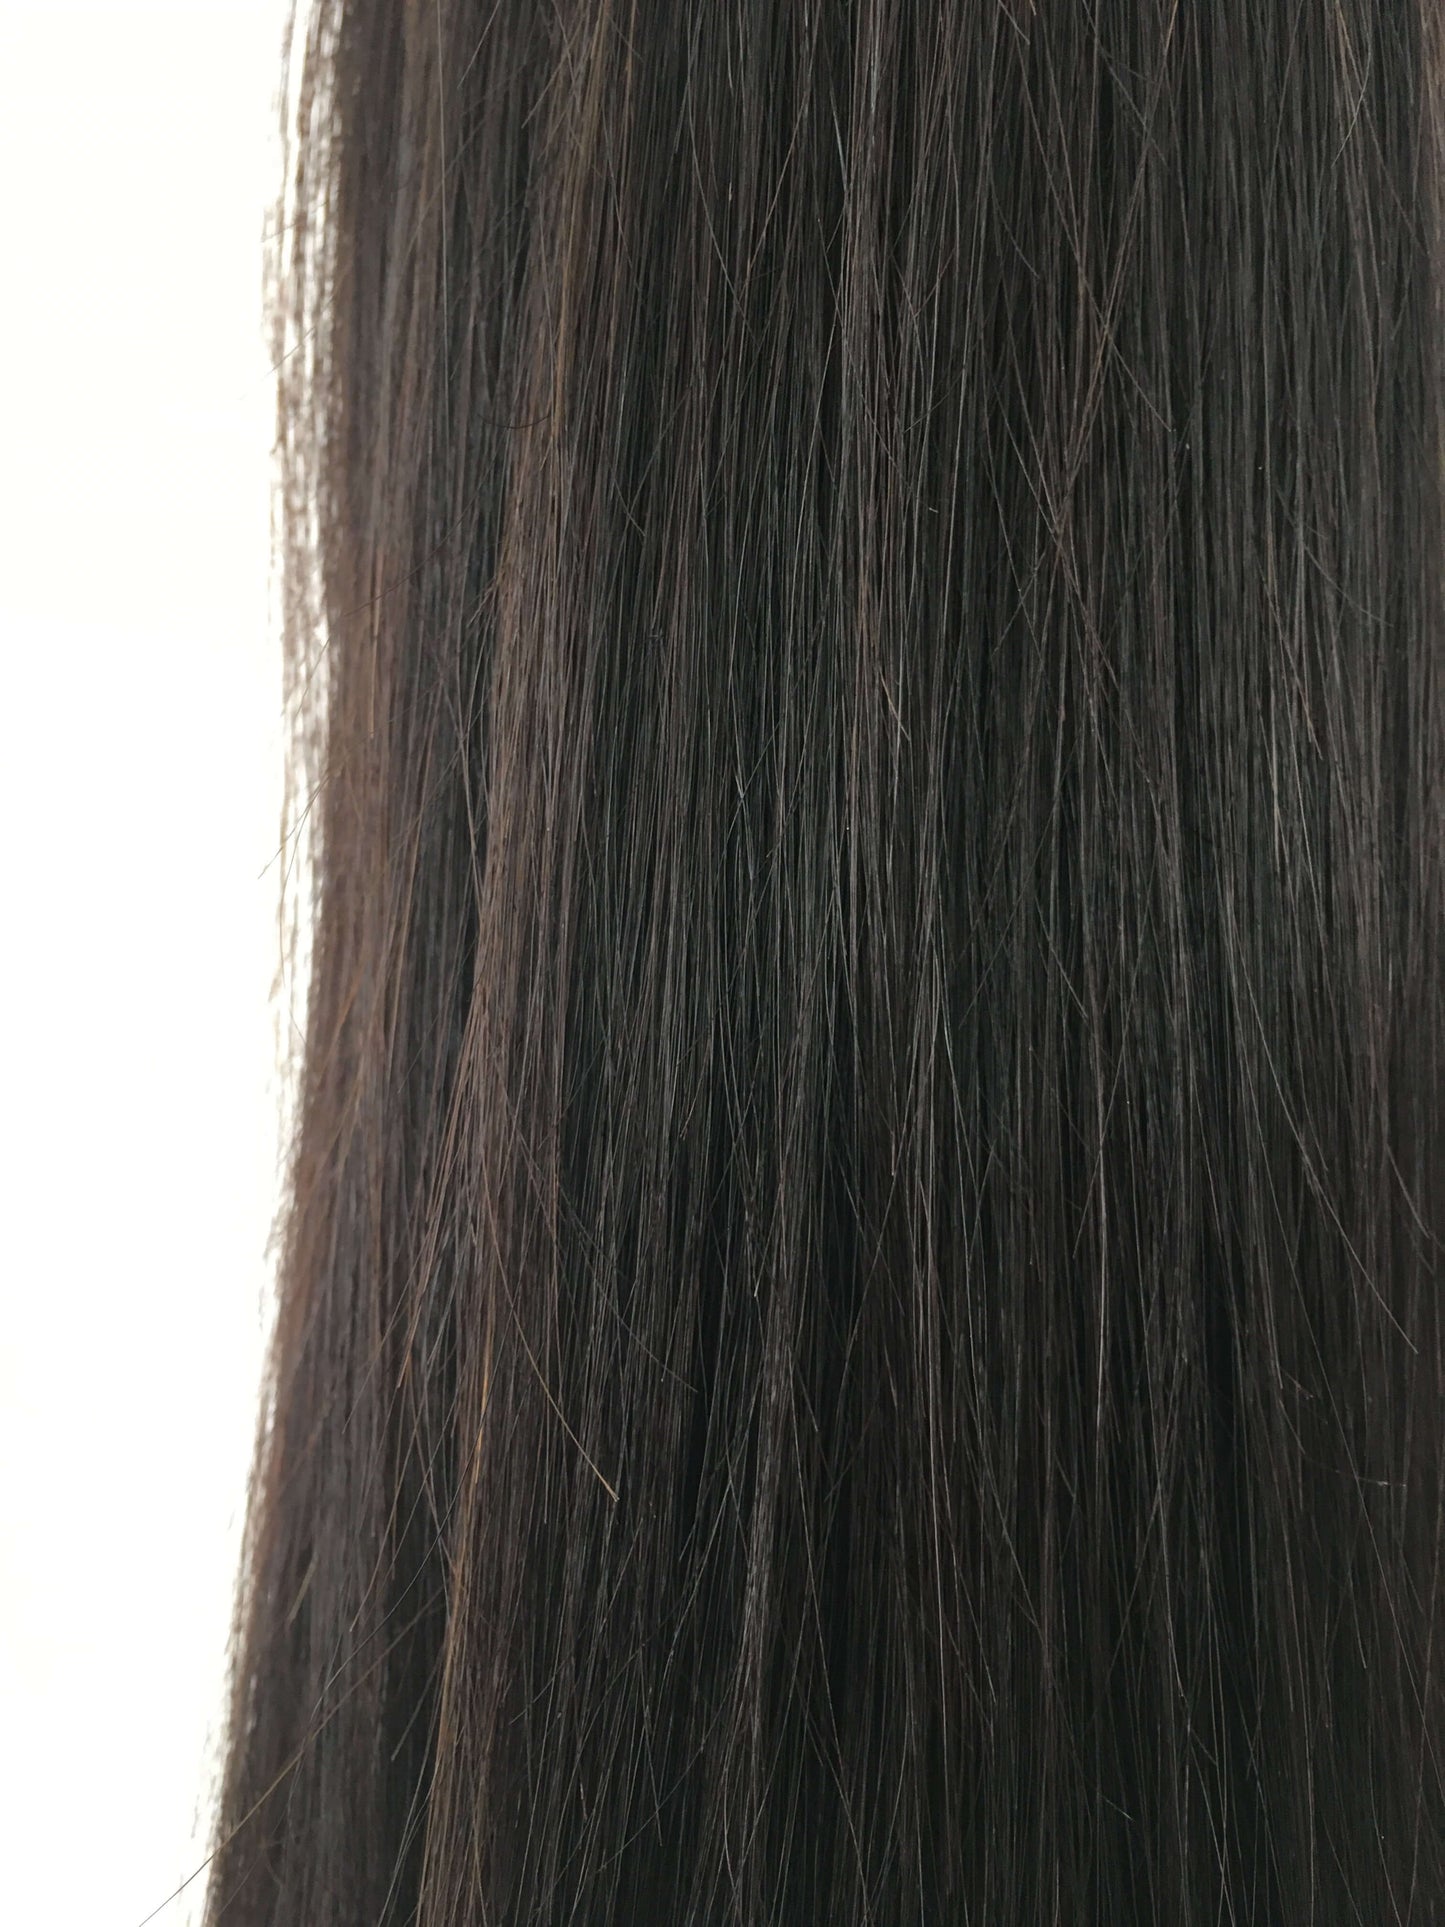 Cheveux humains brésiliens vierges remy - trames, 24'', droits, vierges, 100g - expédition rapide